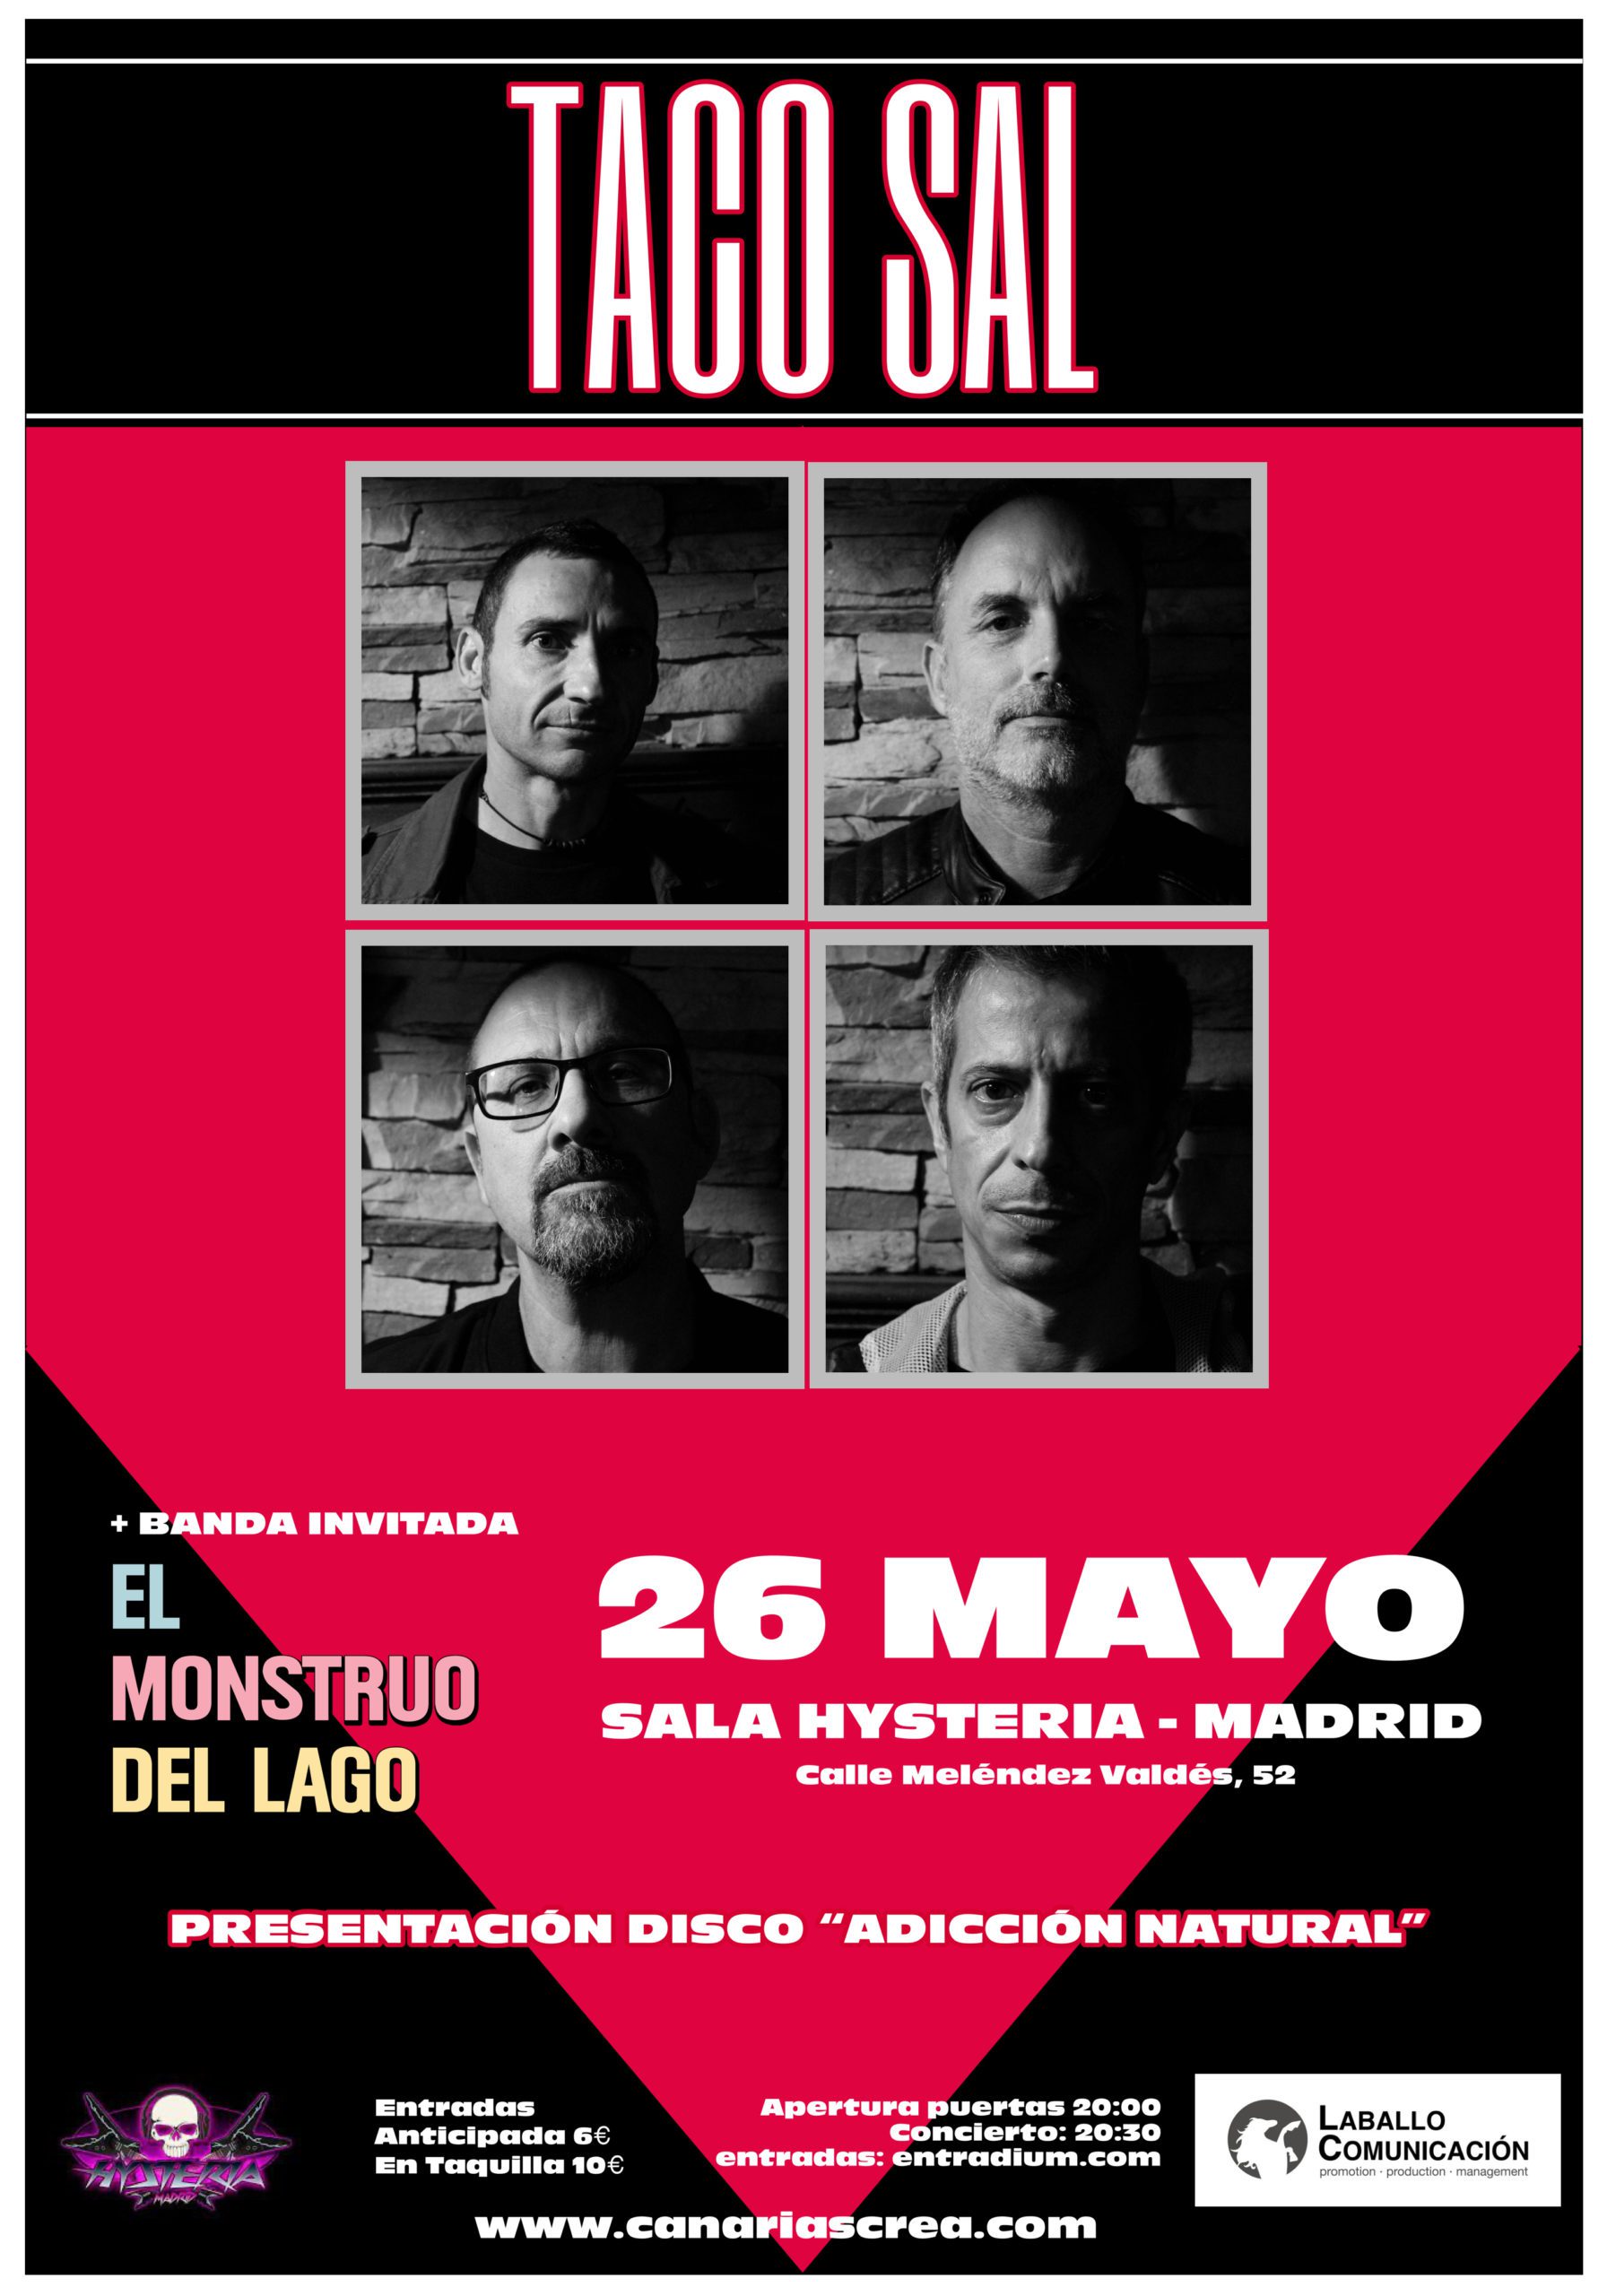 Taco Sal lanza su segundo single y anuncia su presentación en Madrid